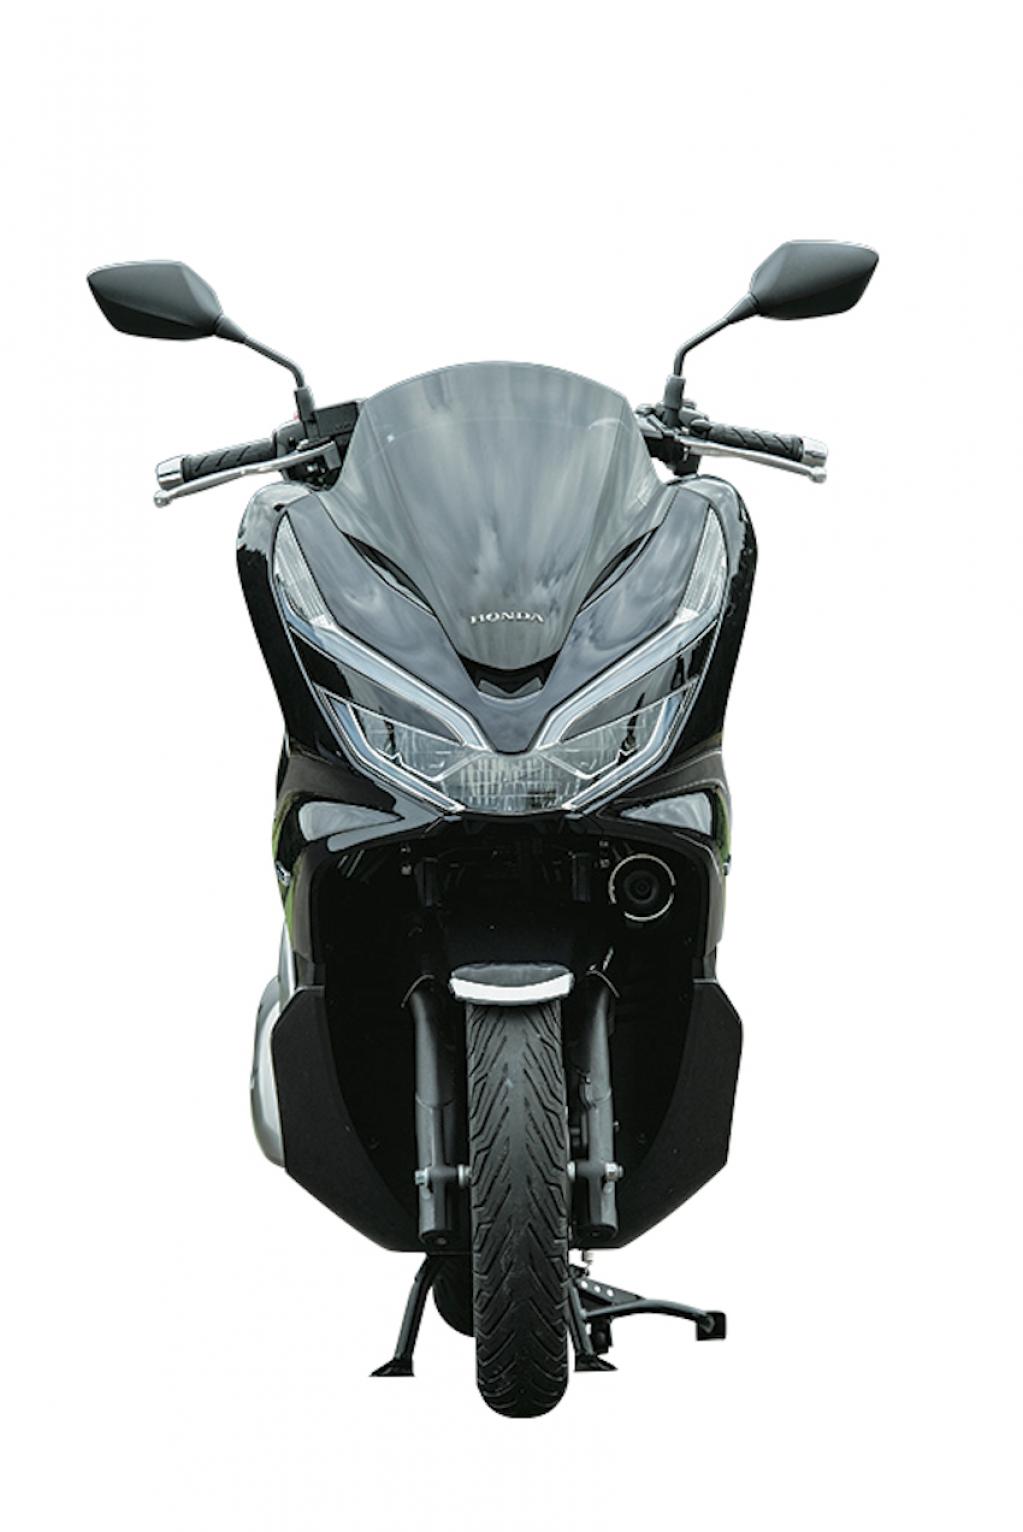 125ccスクーターの主要どころの仕様とスペックを徹底比較 Motor Fan Bikes モータファンバイクス